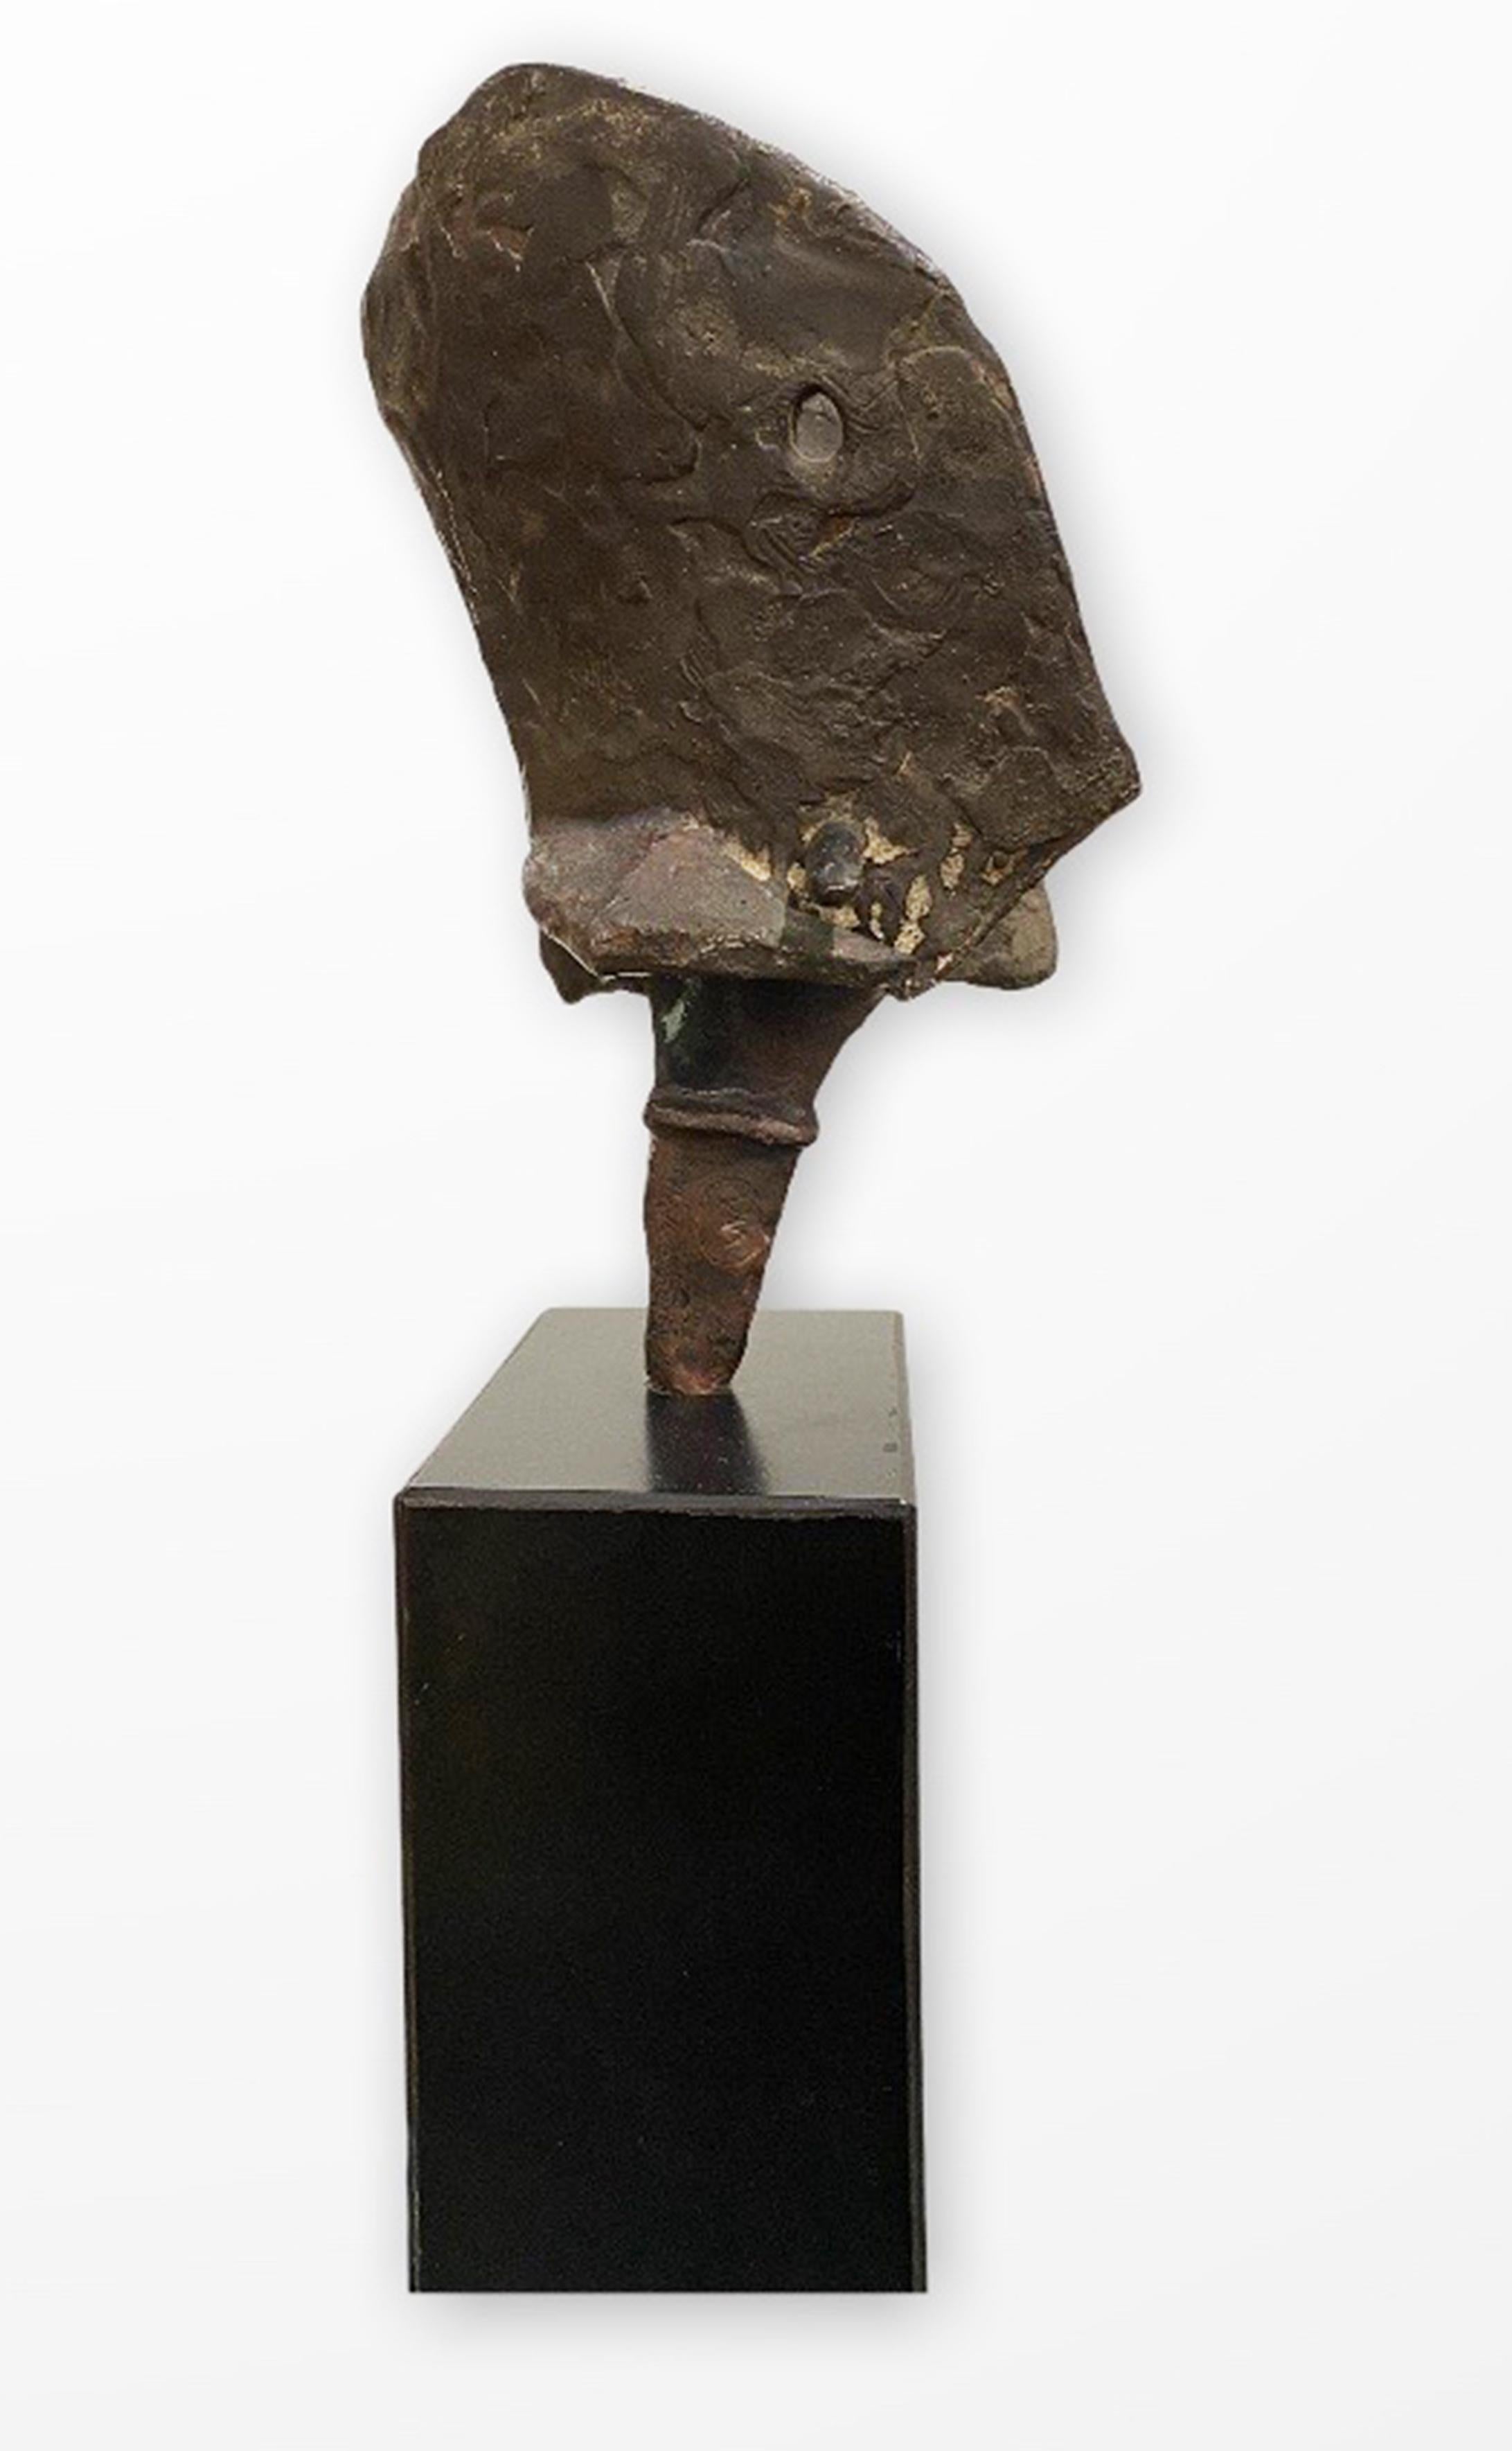 Piccolo Guerriero (Little Warrior) - Sculpture by Luciano Minguzzi